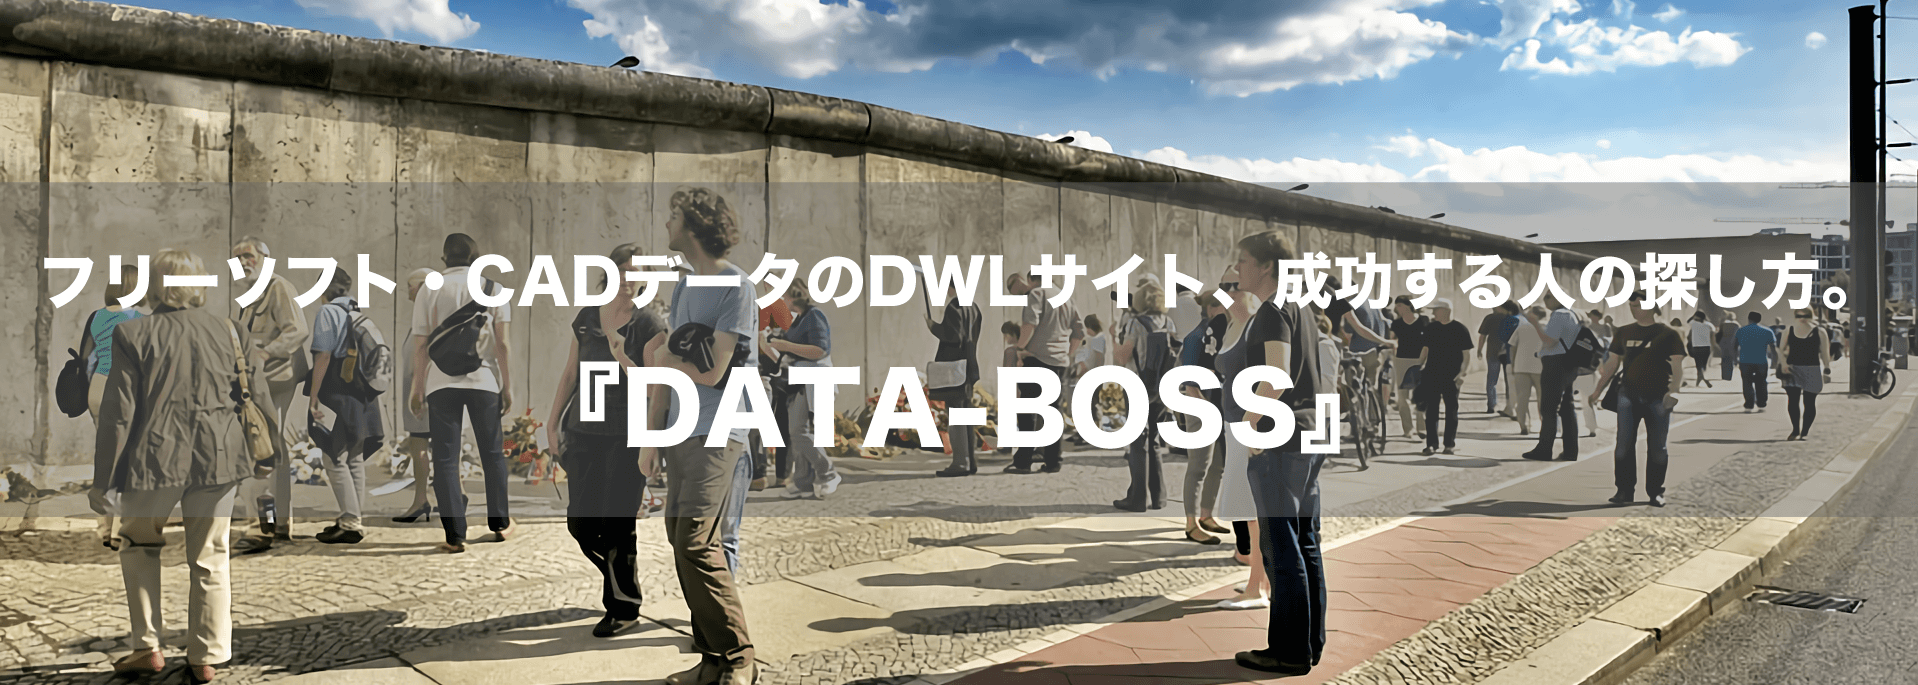 フリーソフト・CADデータの『DATA-BOSS』